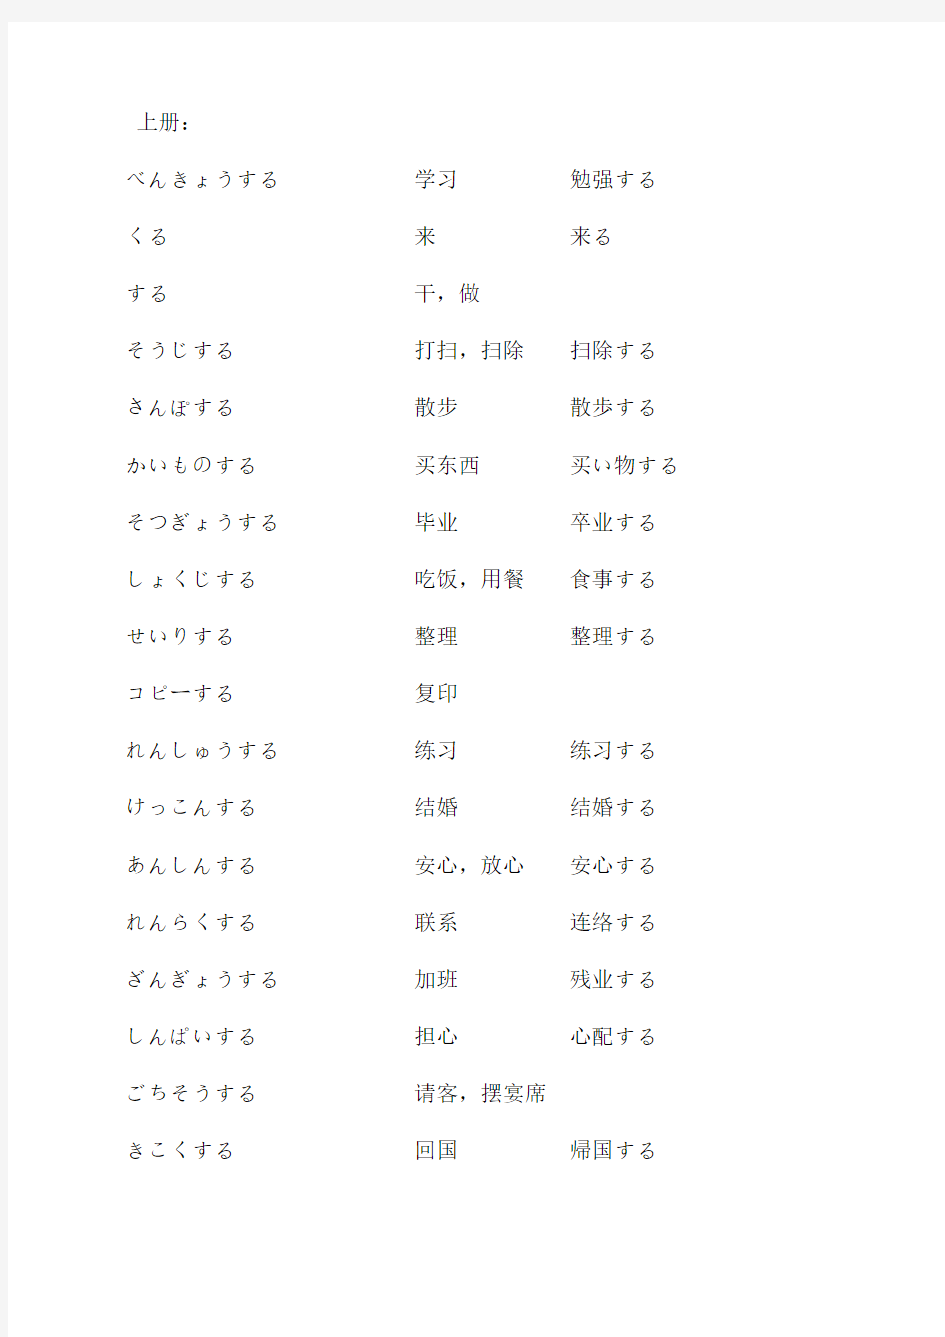 《新标日》 三类日语动词基本形